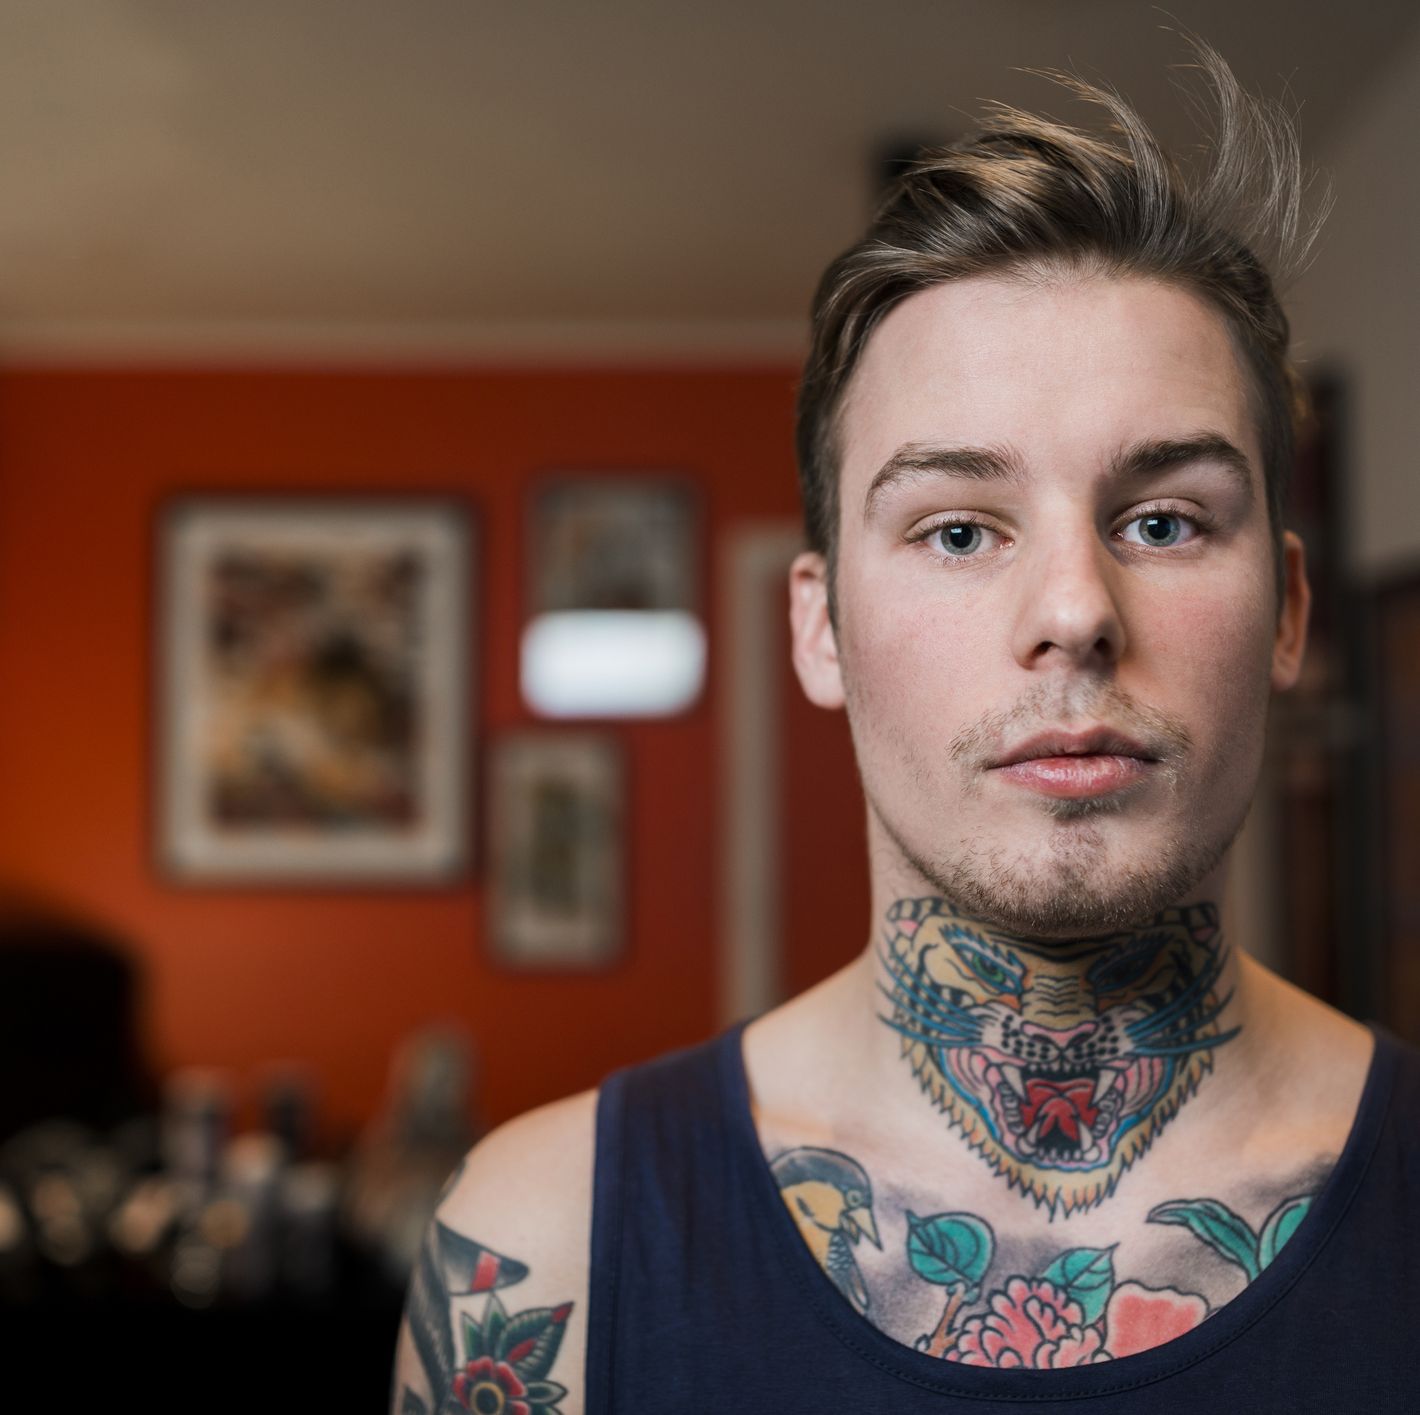 unique om tattoo designs for men